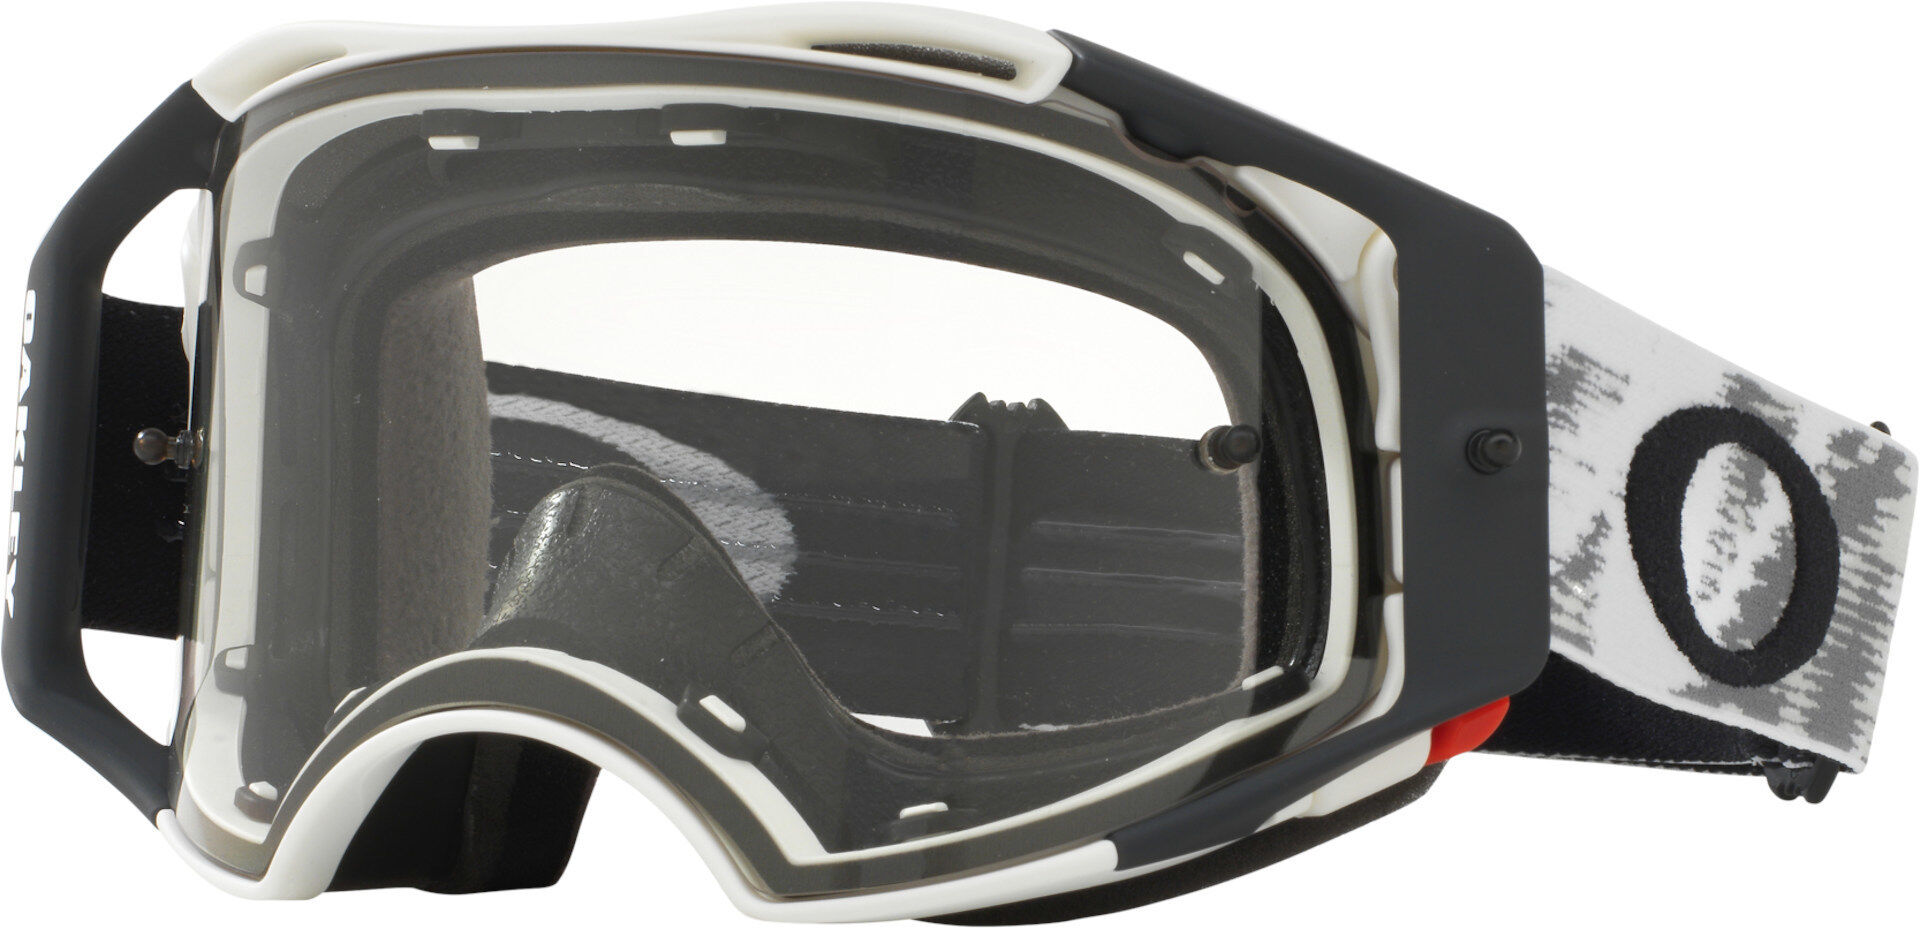 Oakley Airbrake Matte White Speed Gafas de Motocross - Negro Blanco (un tamaño)